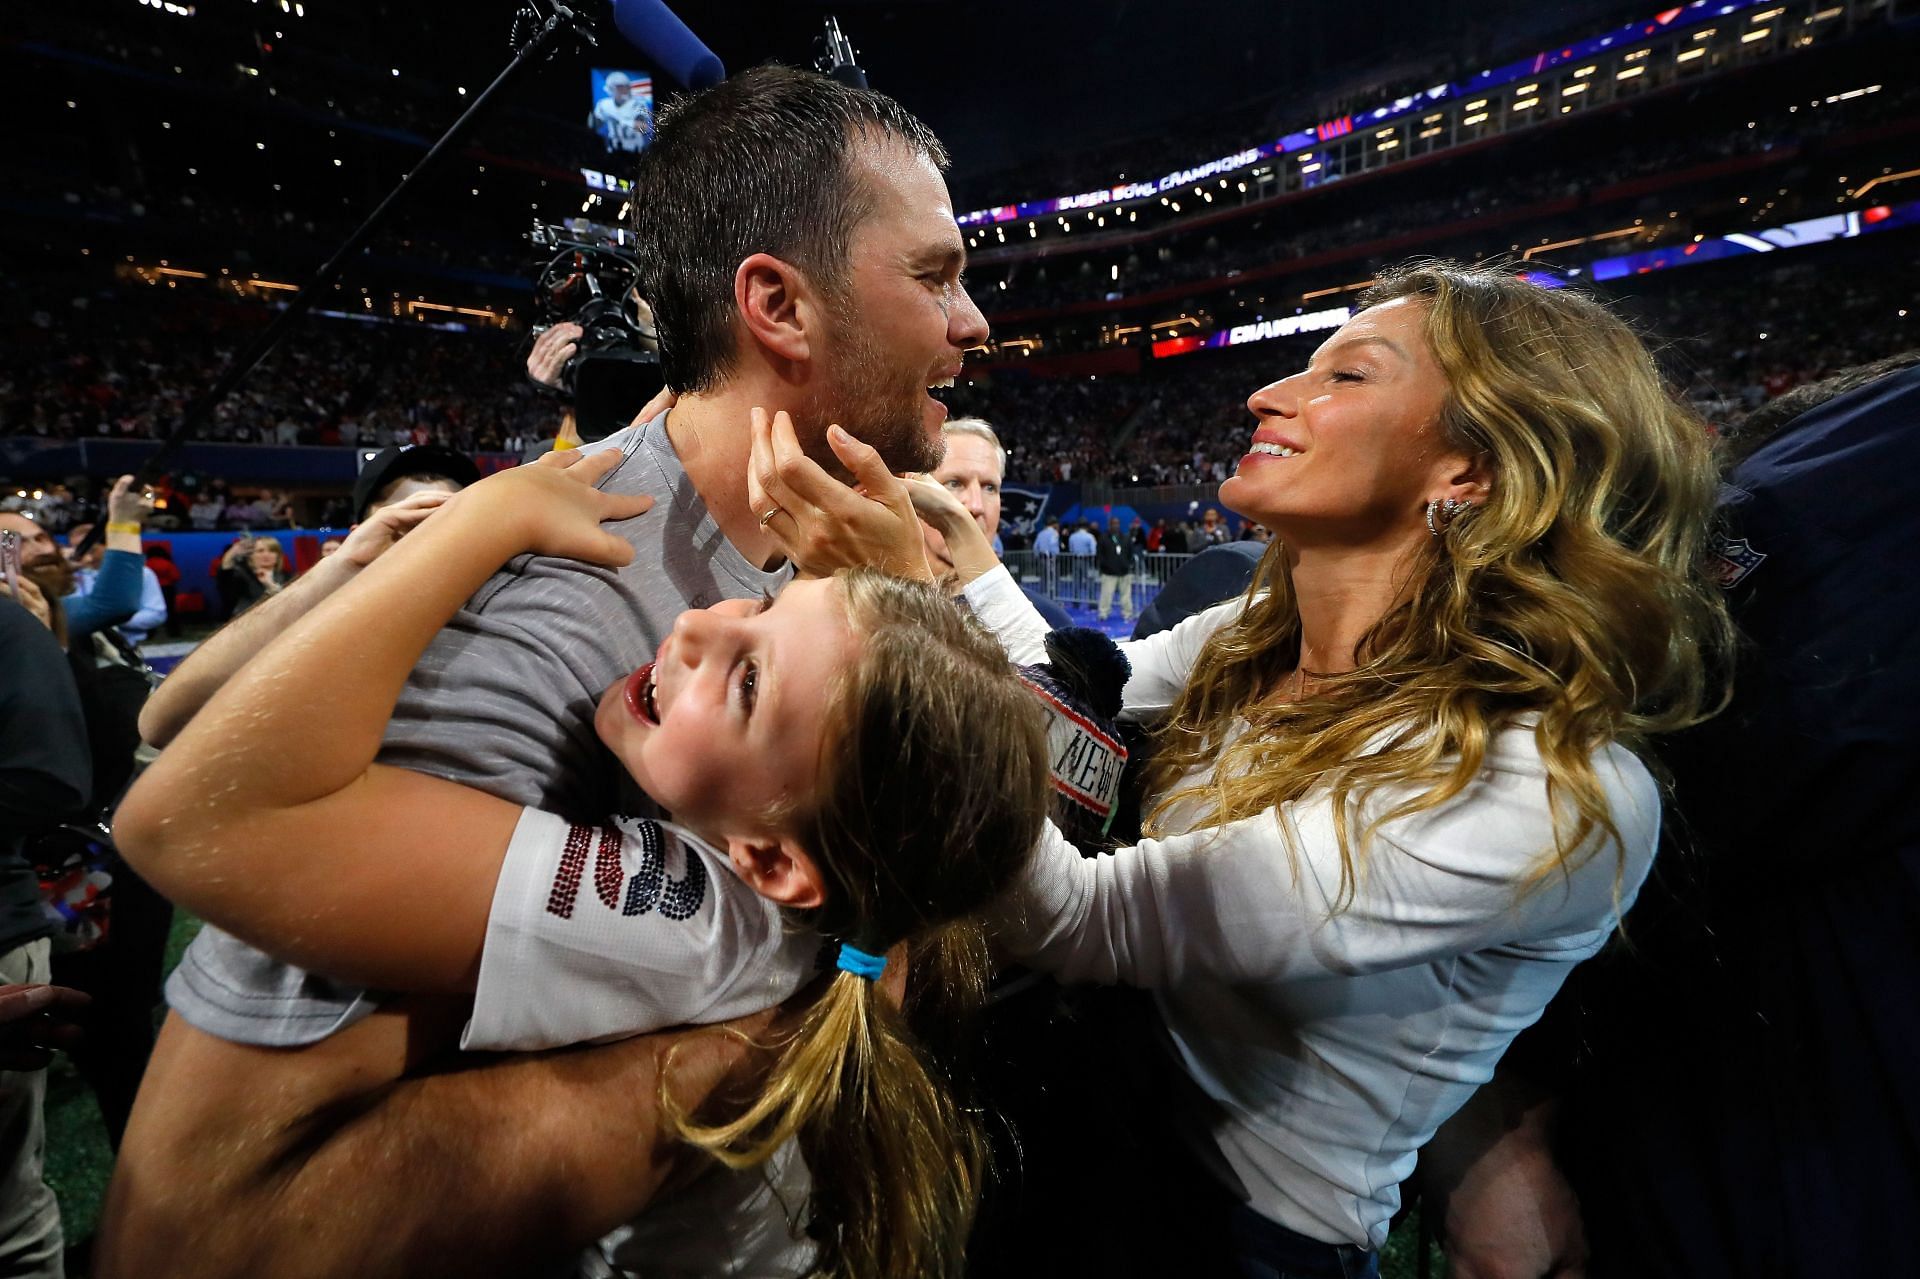 Tom Brady and Gisele Bundchen celebrate a Super Bowl victory